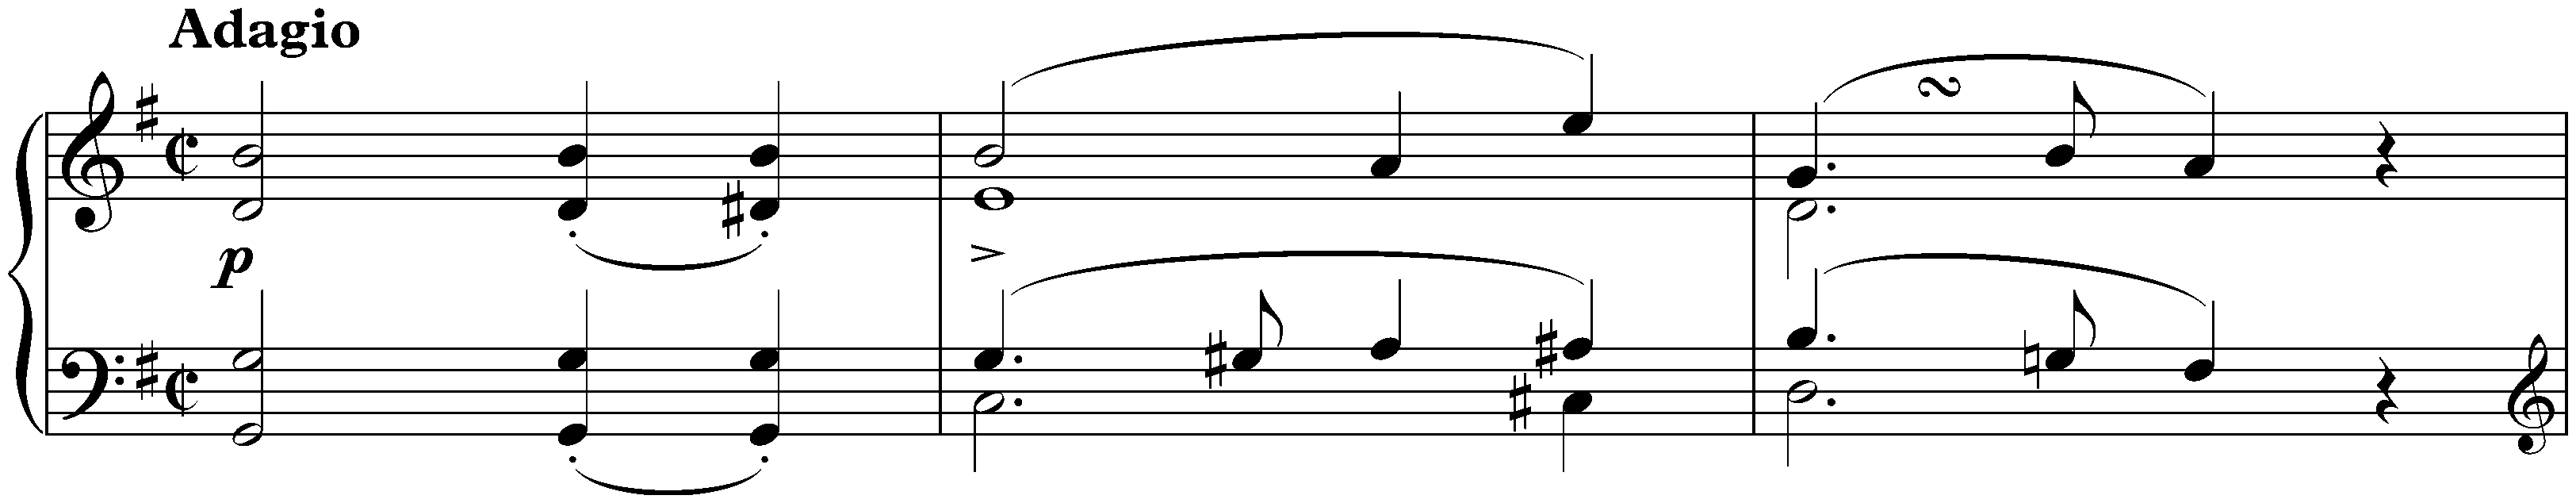 Adagio in G major, D 178